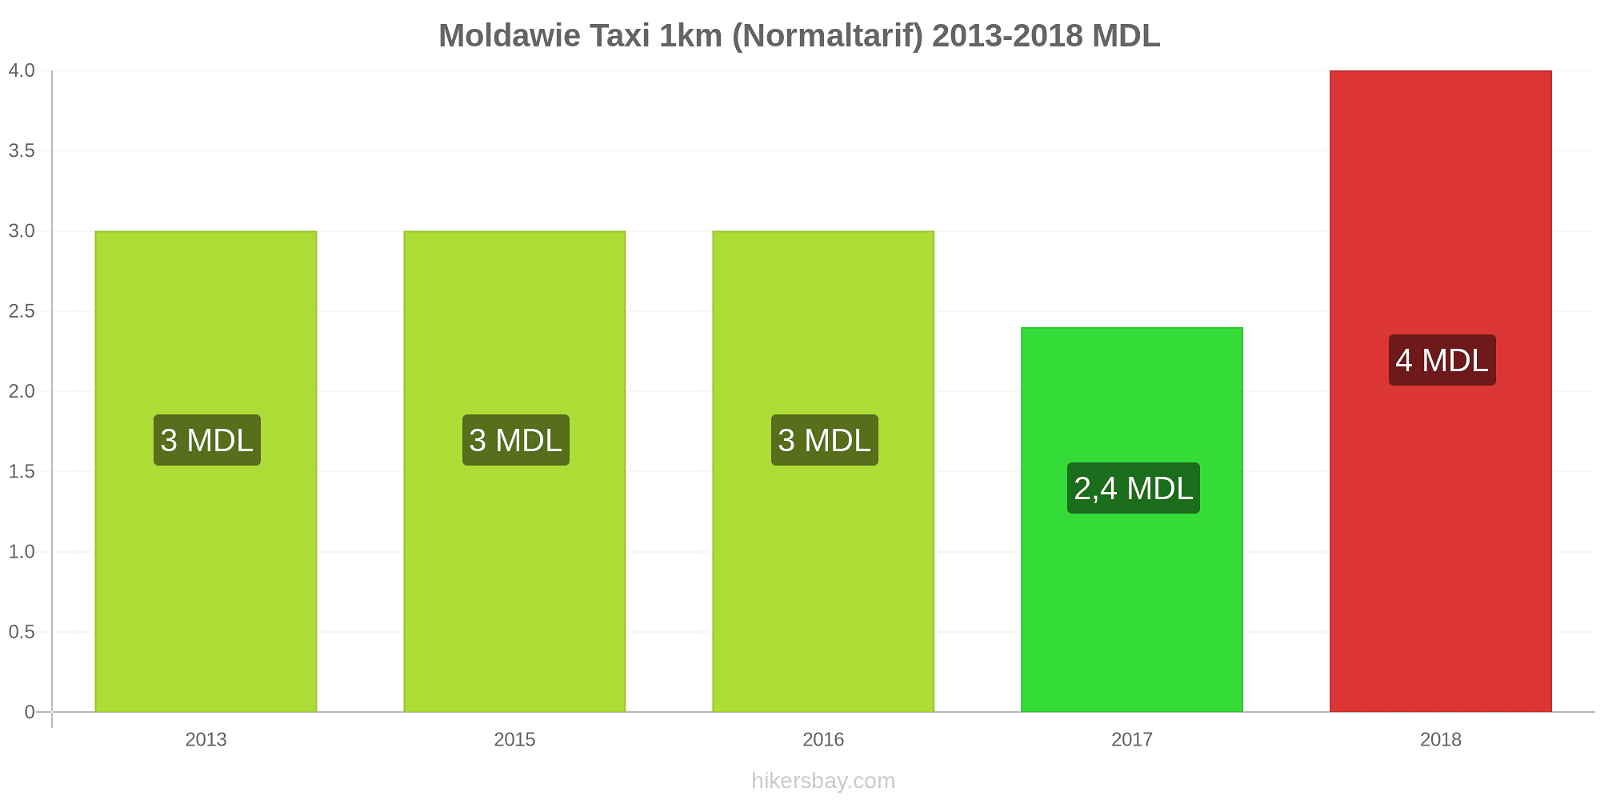 Moldawie Preisänderungen Taxi 1km (Normaltarif) hikersbay.com